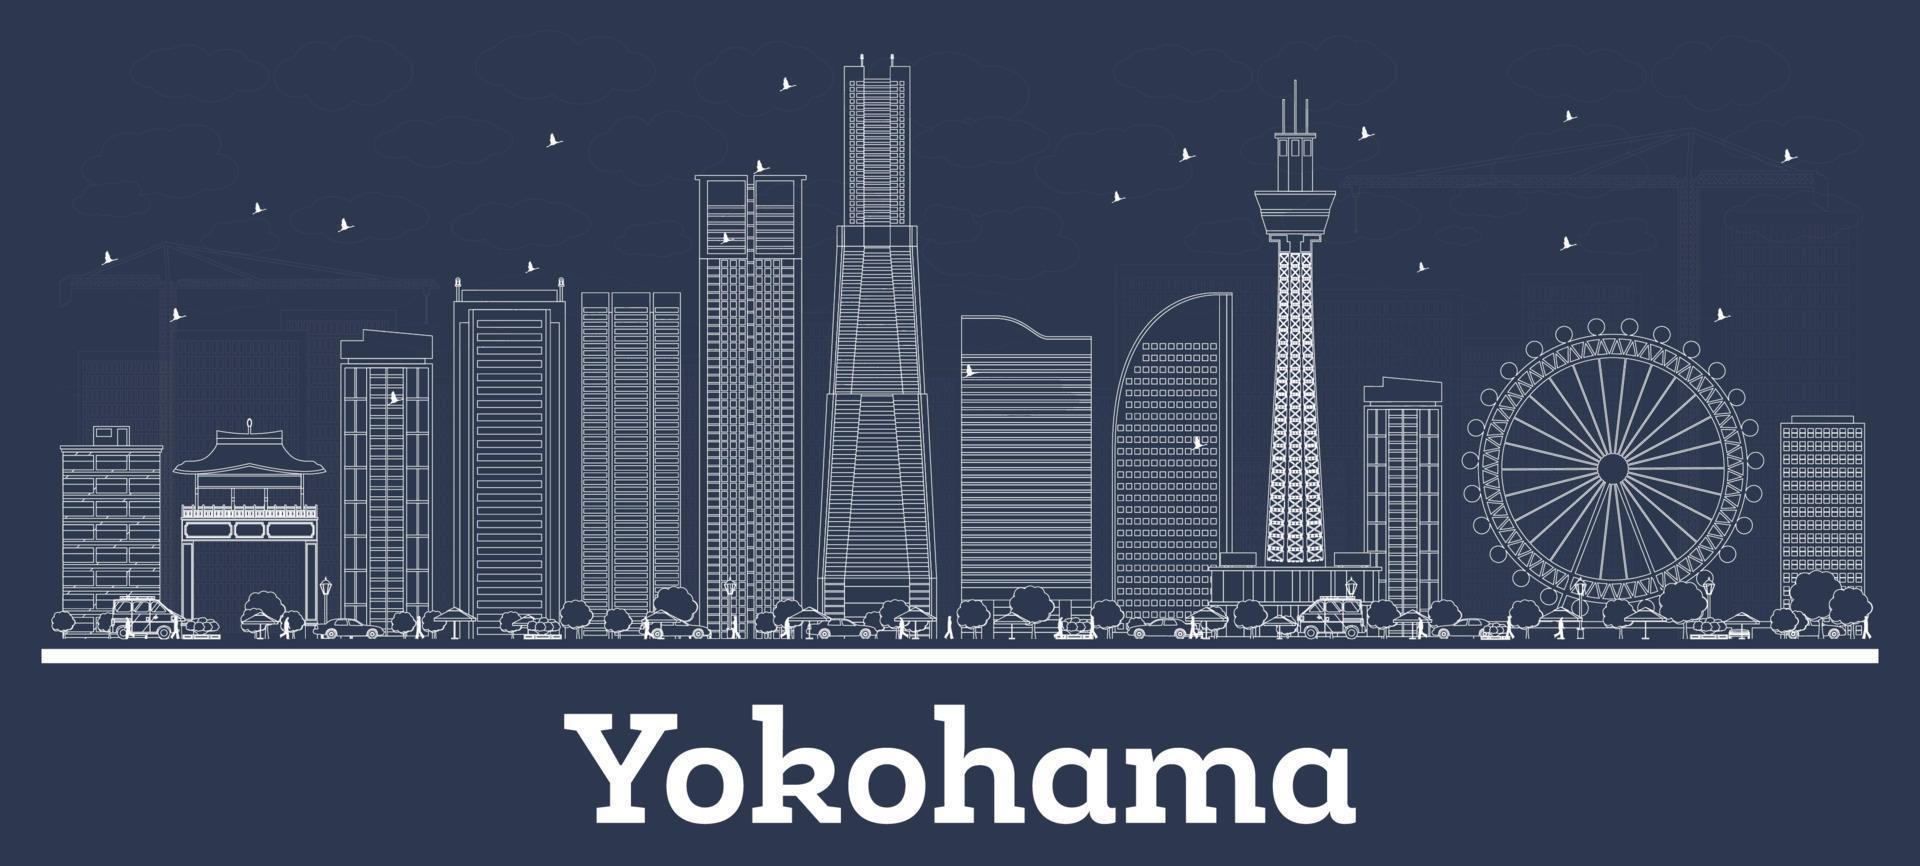 delineie o horizonte da cidade de yokohama japão com edifícios brancos. vetor